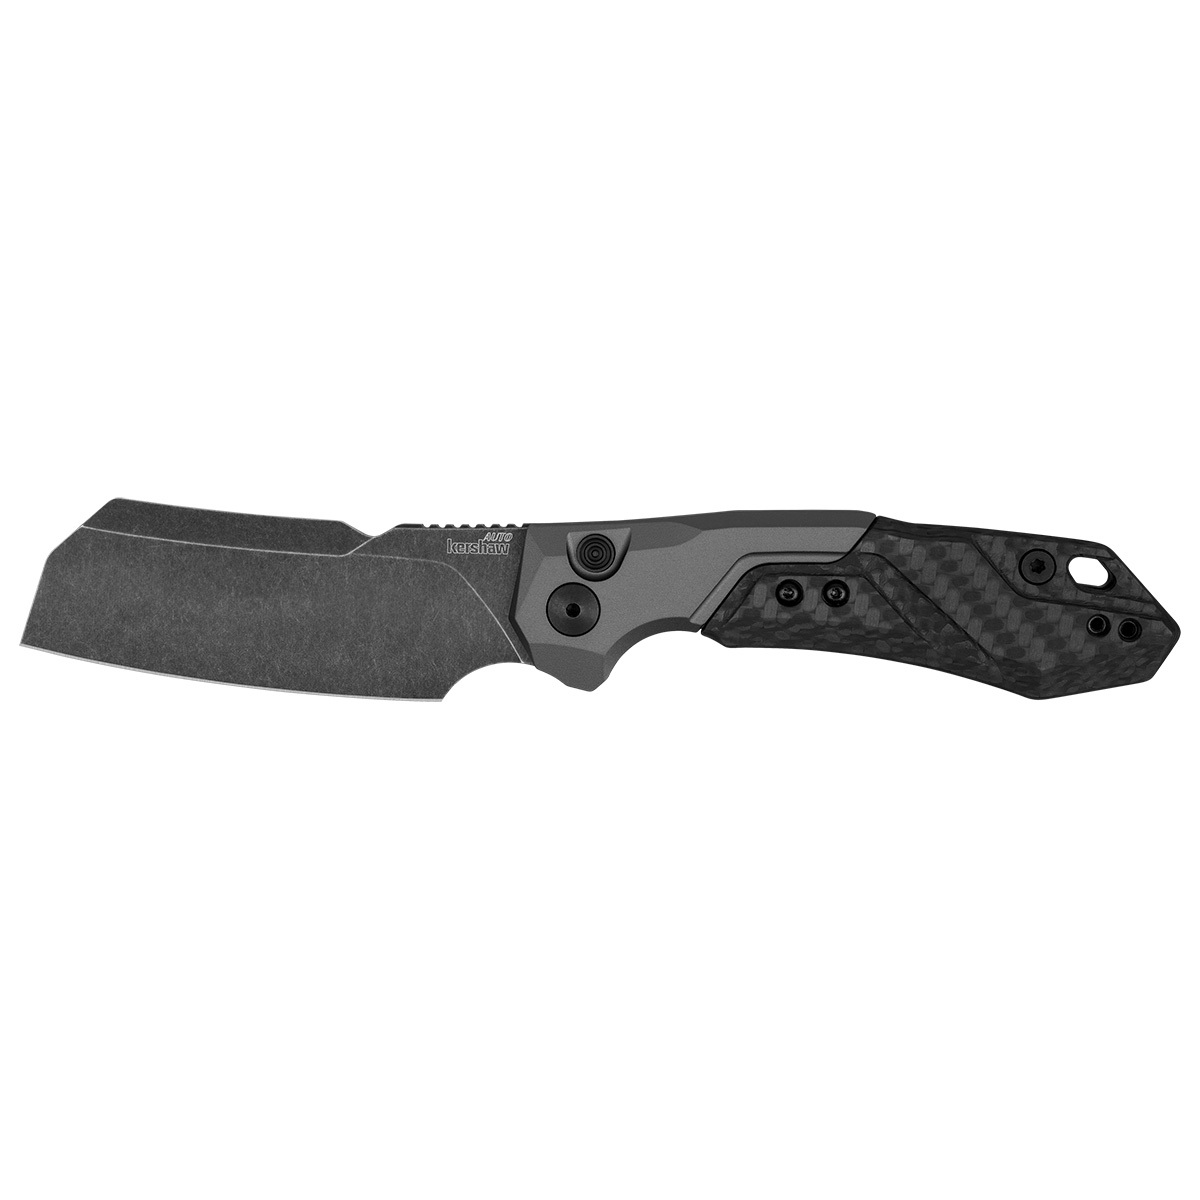 Складной нож Kershaw Launch 14, сталь CPM154, рукоять алюминий/Carbon fiber складной нож germes d2 черная рукоять